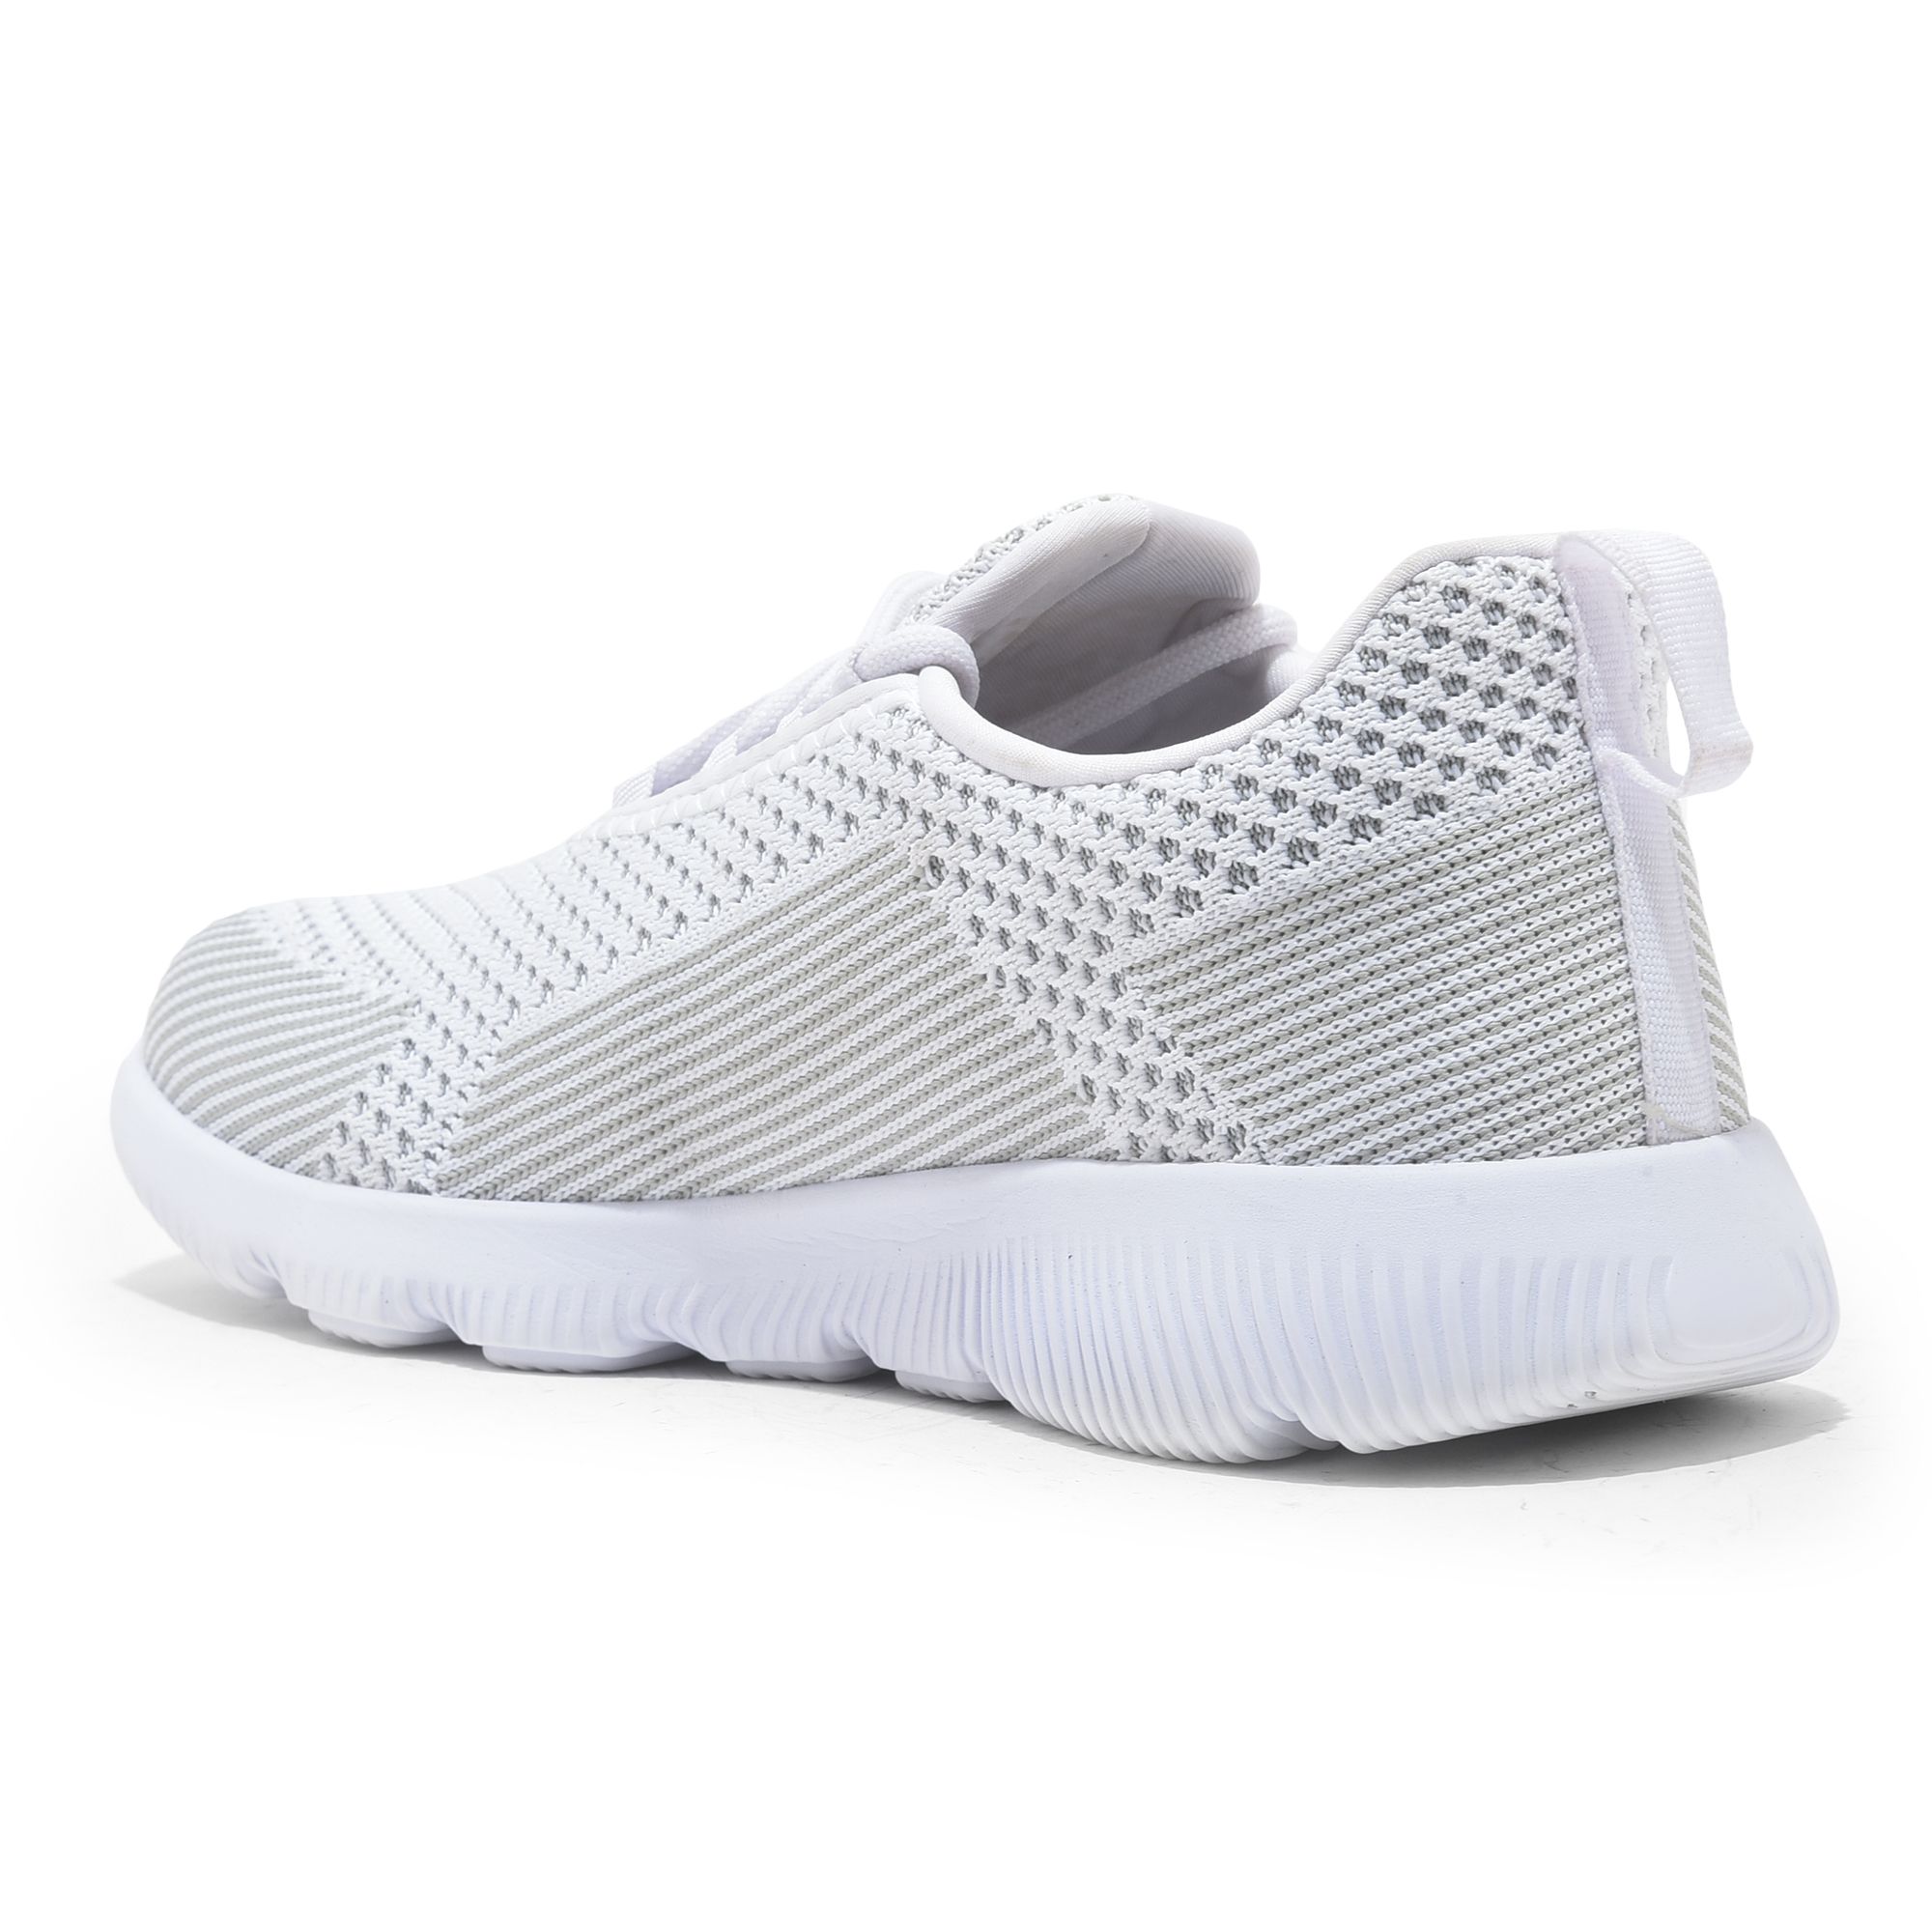 White/Grey slip-on sneaker for men